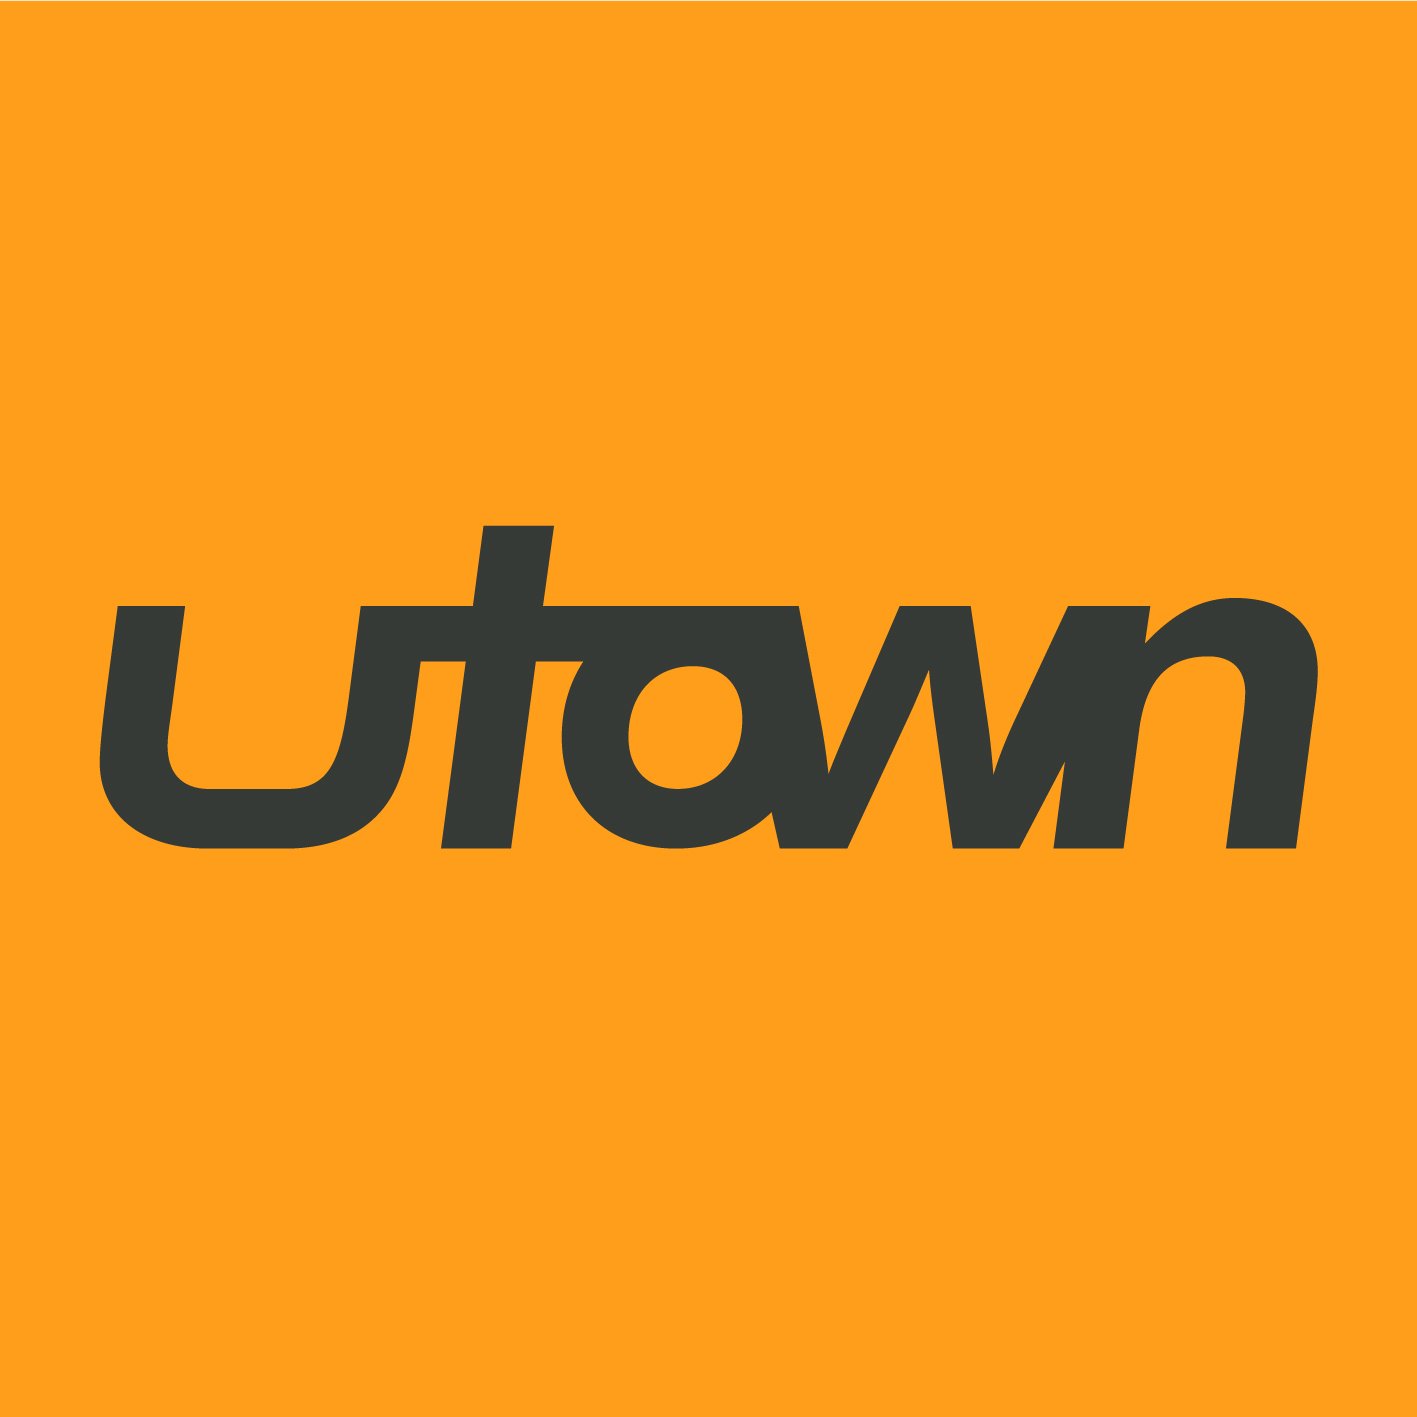 UTOWN Brewery logo design